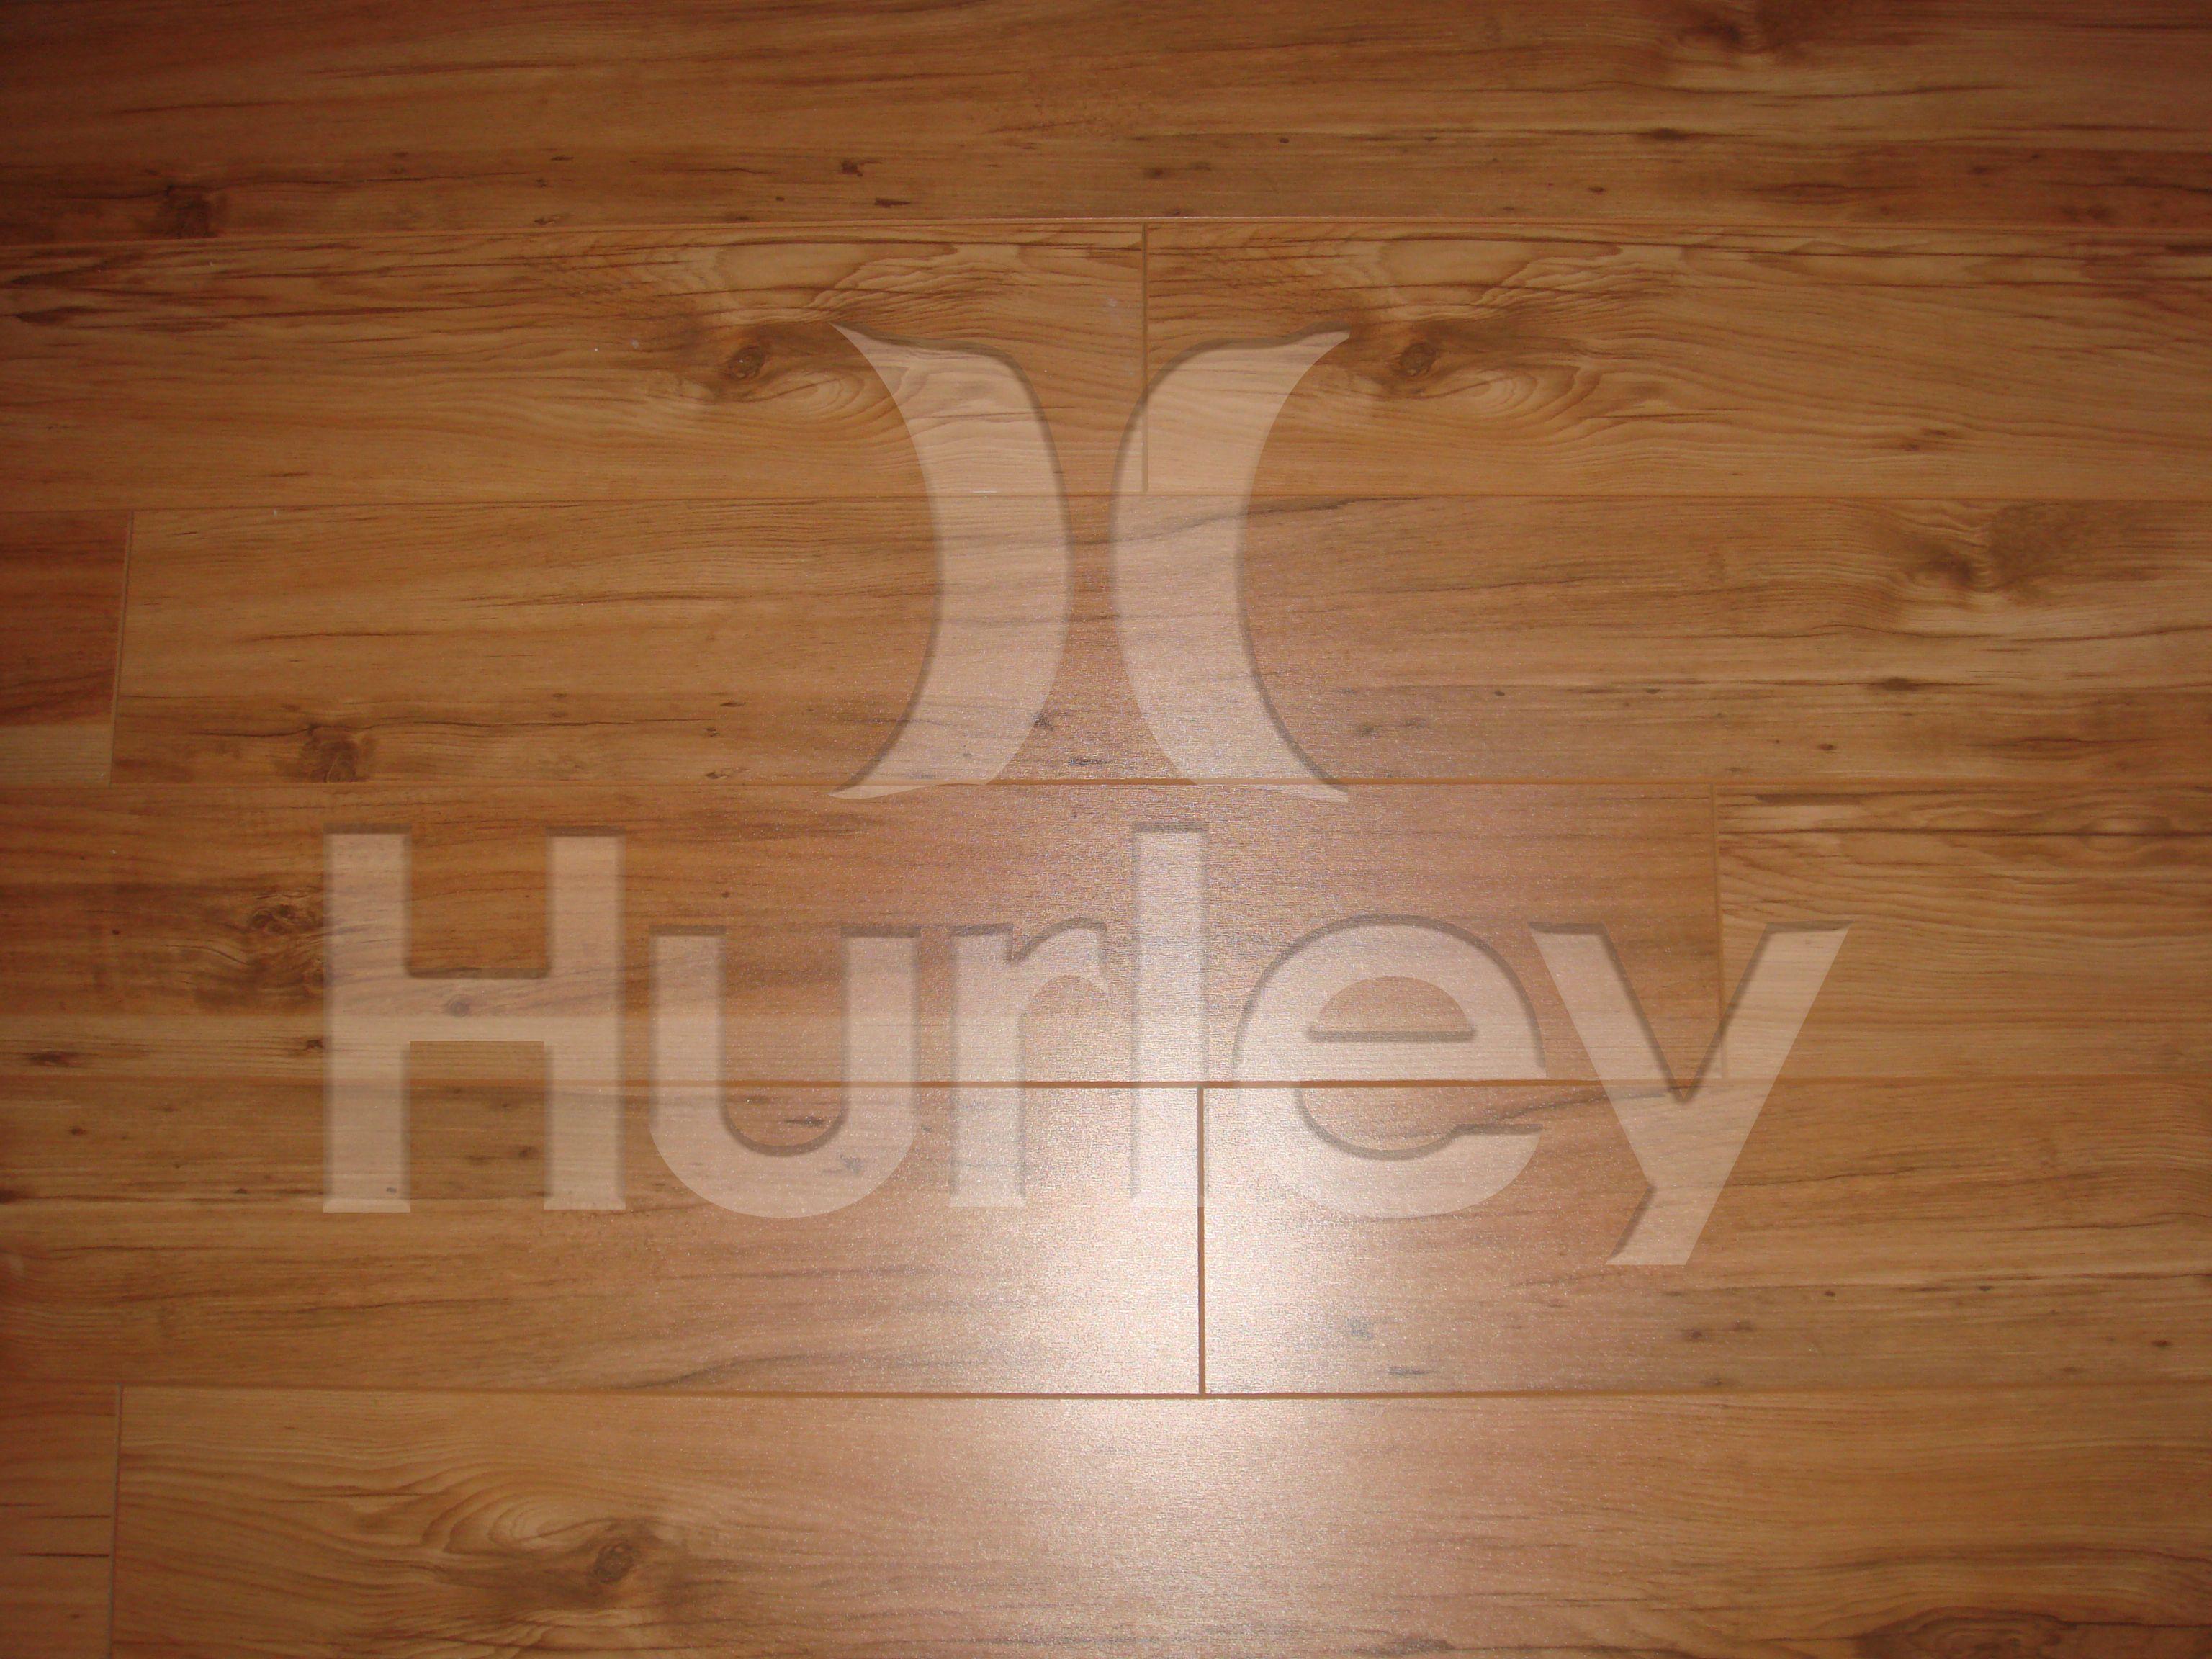 hurley surf logo wallpaper